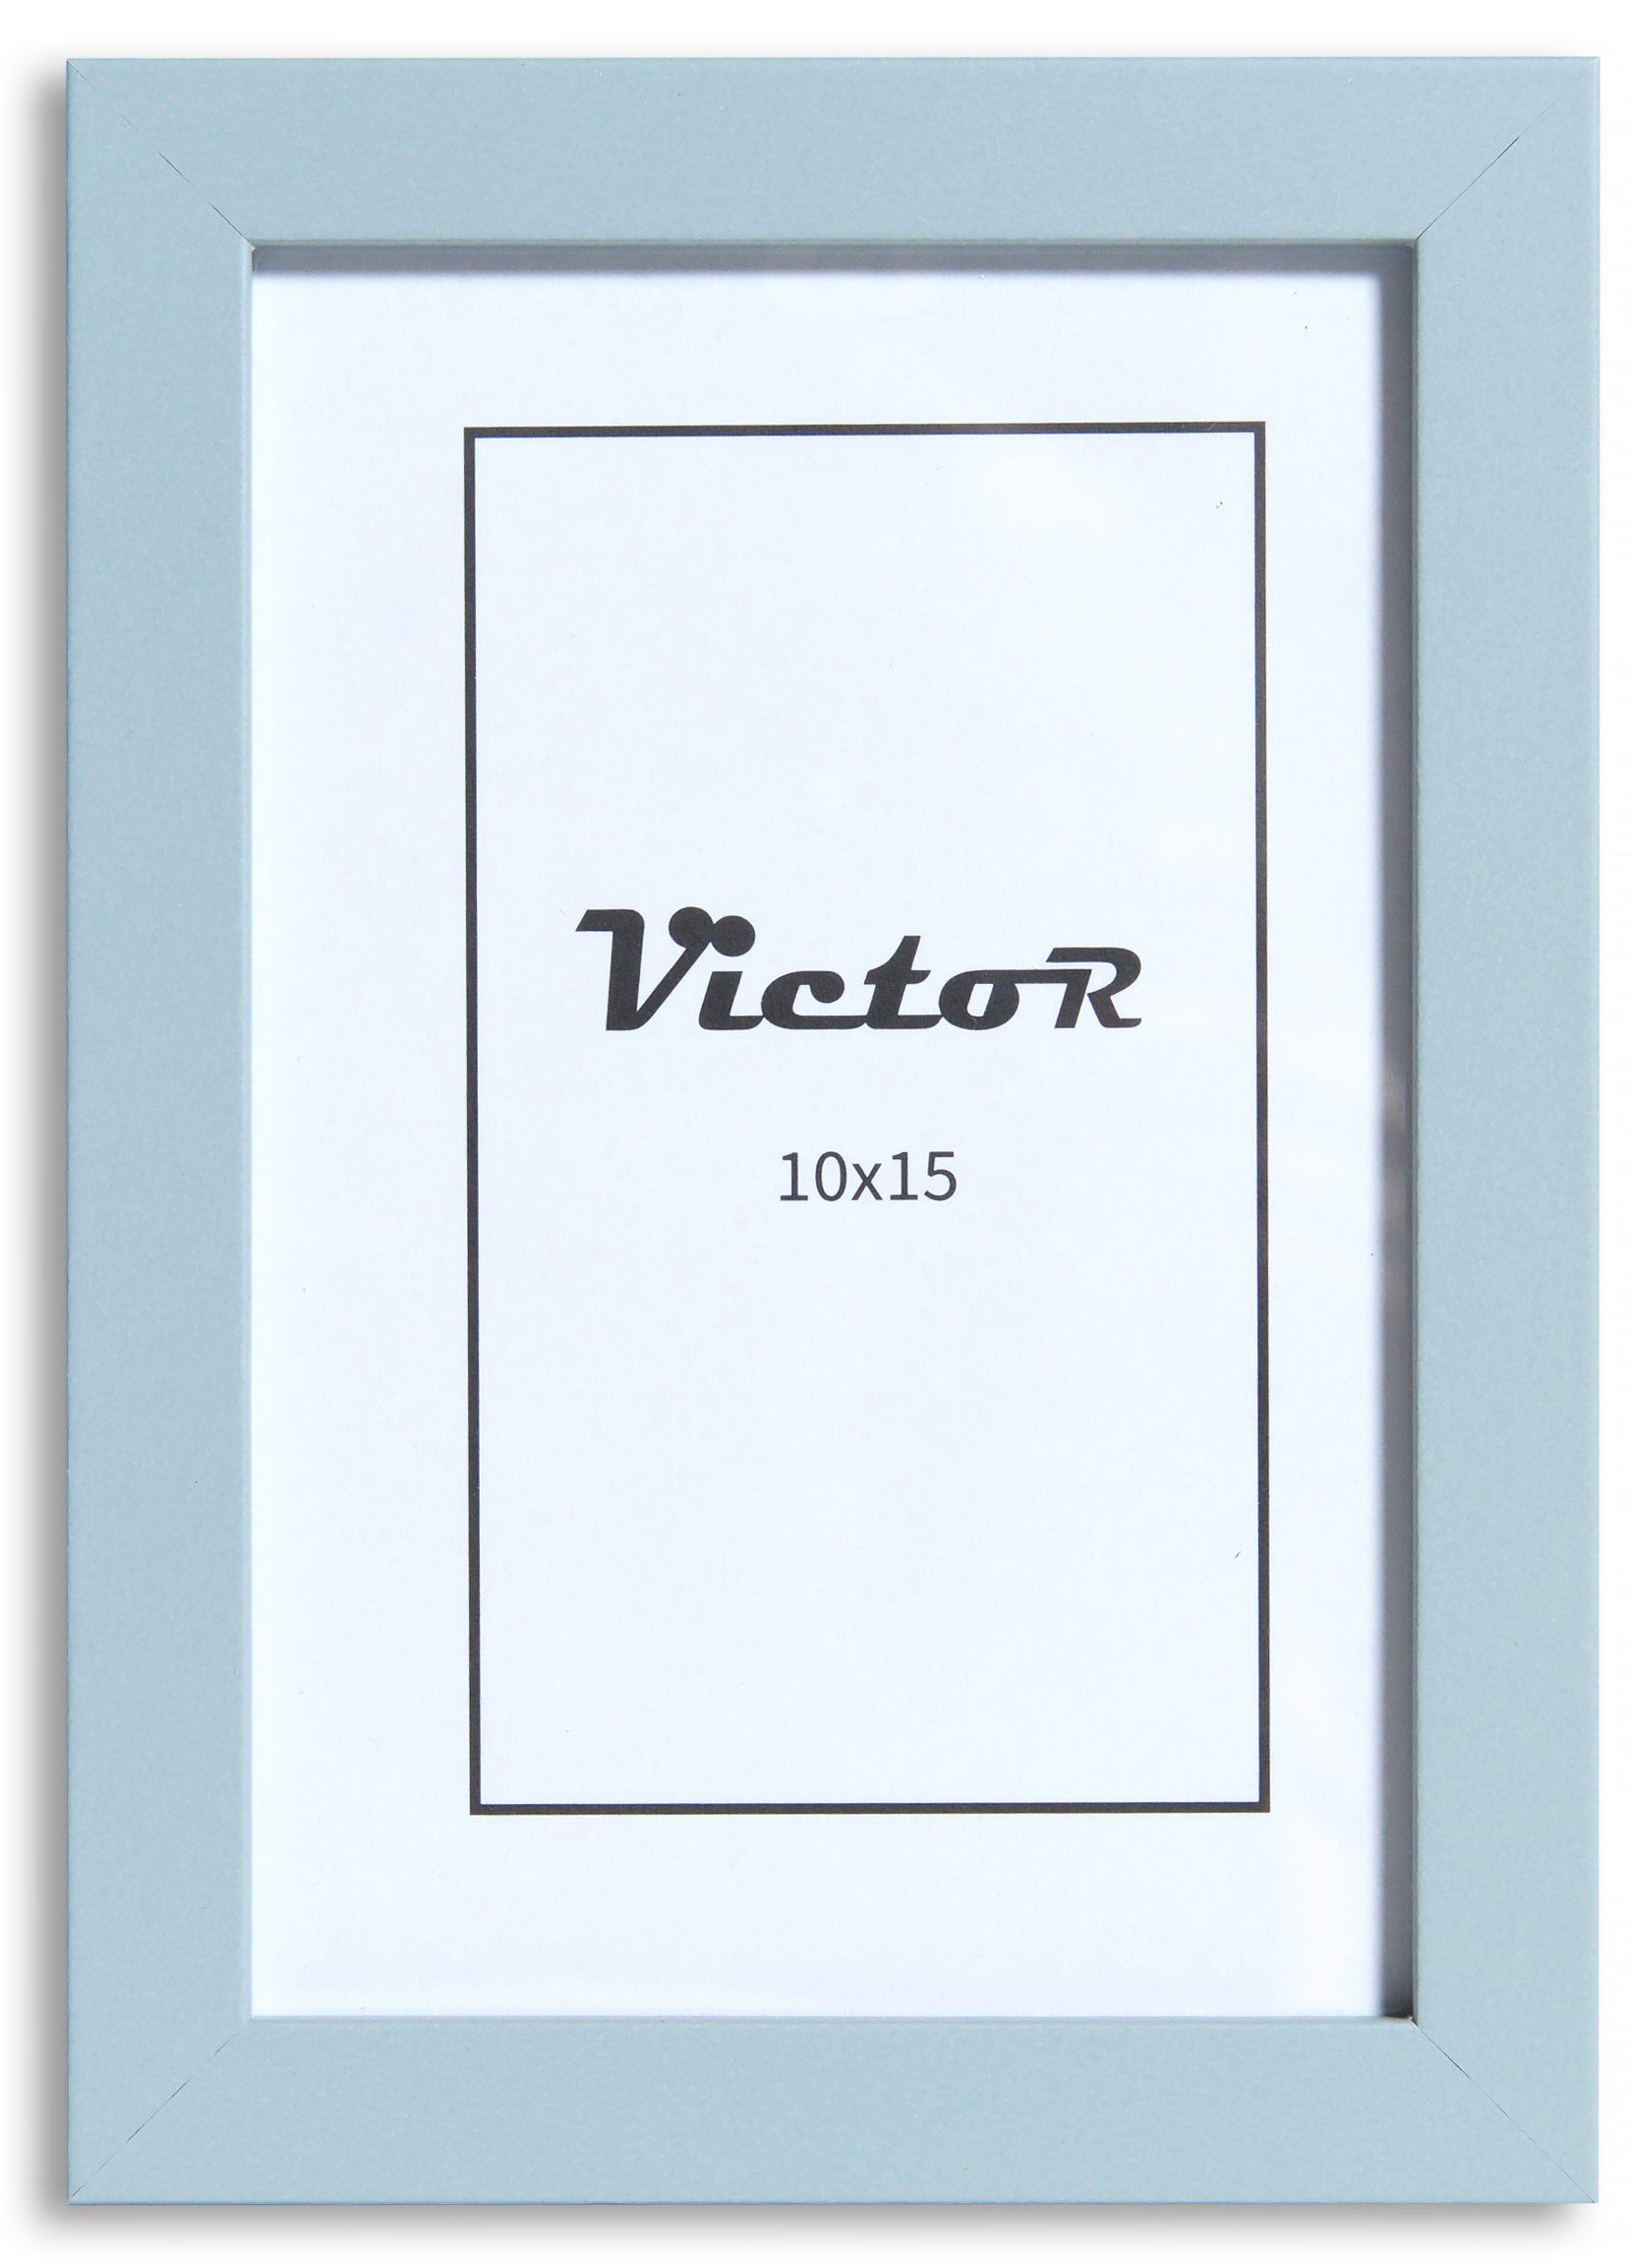 cm, Leiste Victor (Zenith) in Klee, Holzrahmen 10x15 schmaler mit blau, Bilderrahmen